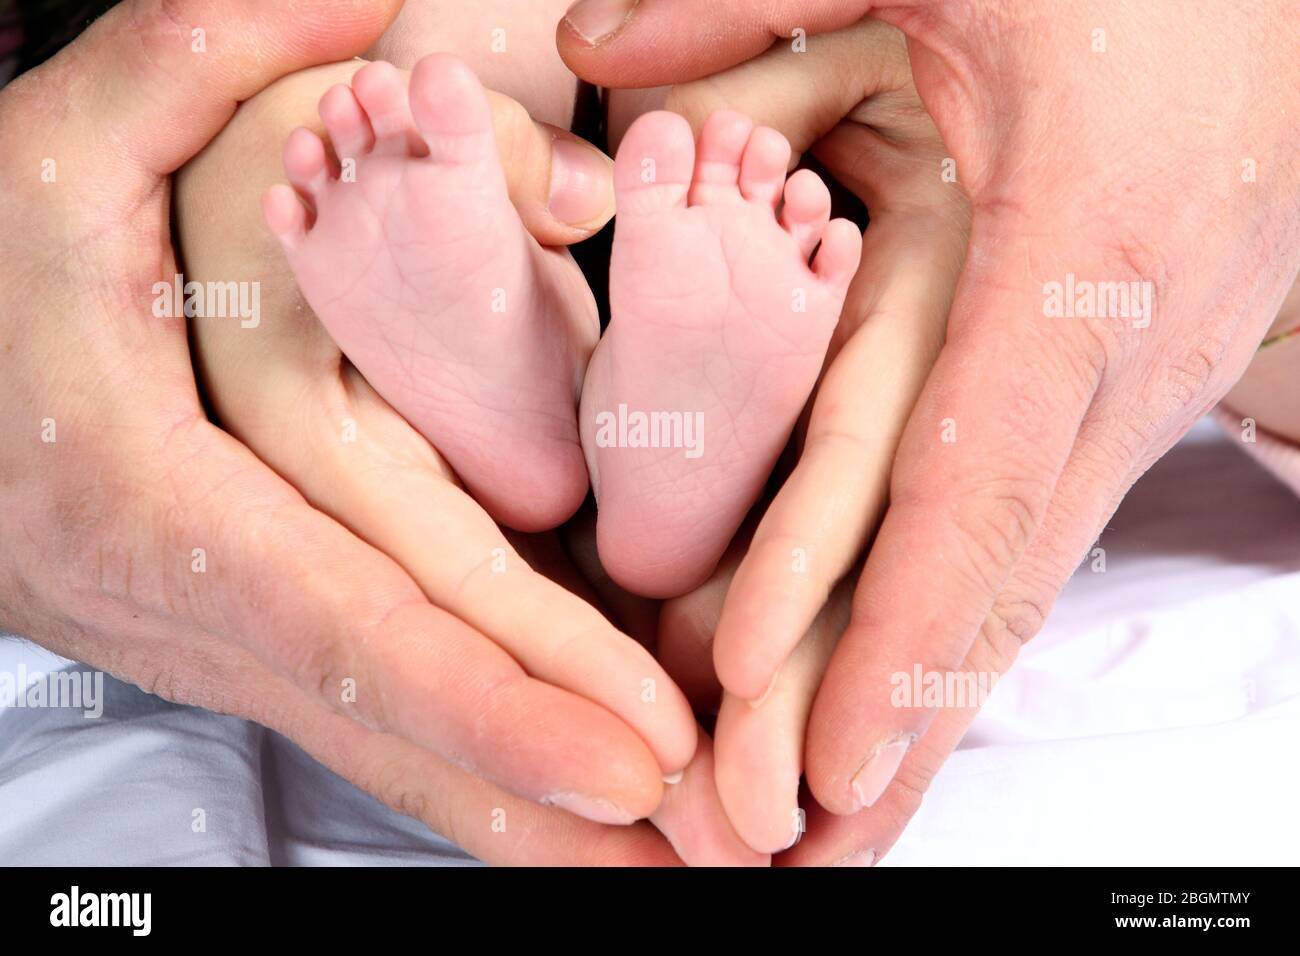 Las Manos De Mama Y Papa Formando Un Corazon En Los Pies Del Bebe Haciendose Padres Concepto Maternidad Paternidad Crianza Fotografia De Stock Alamy